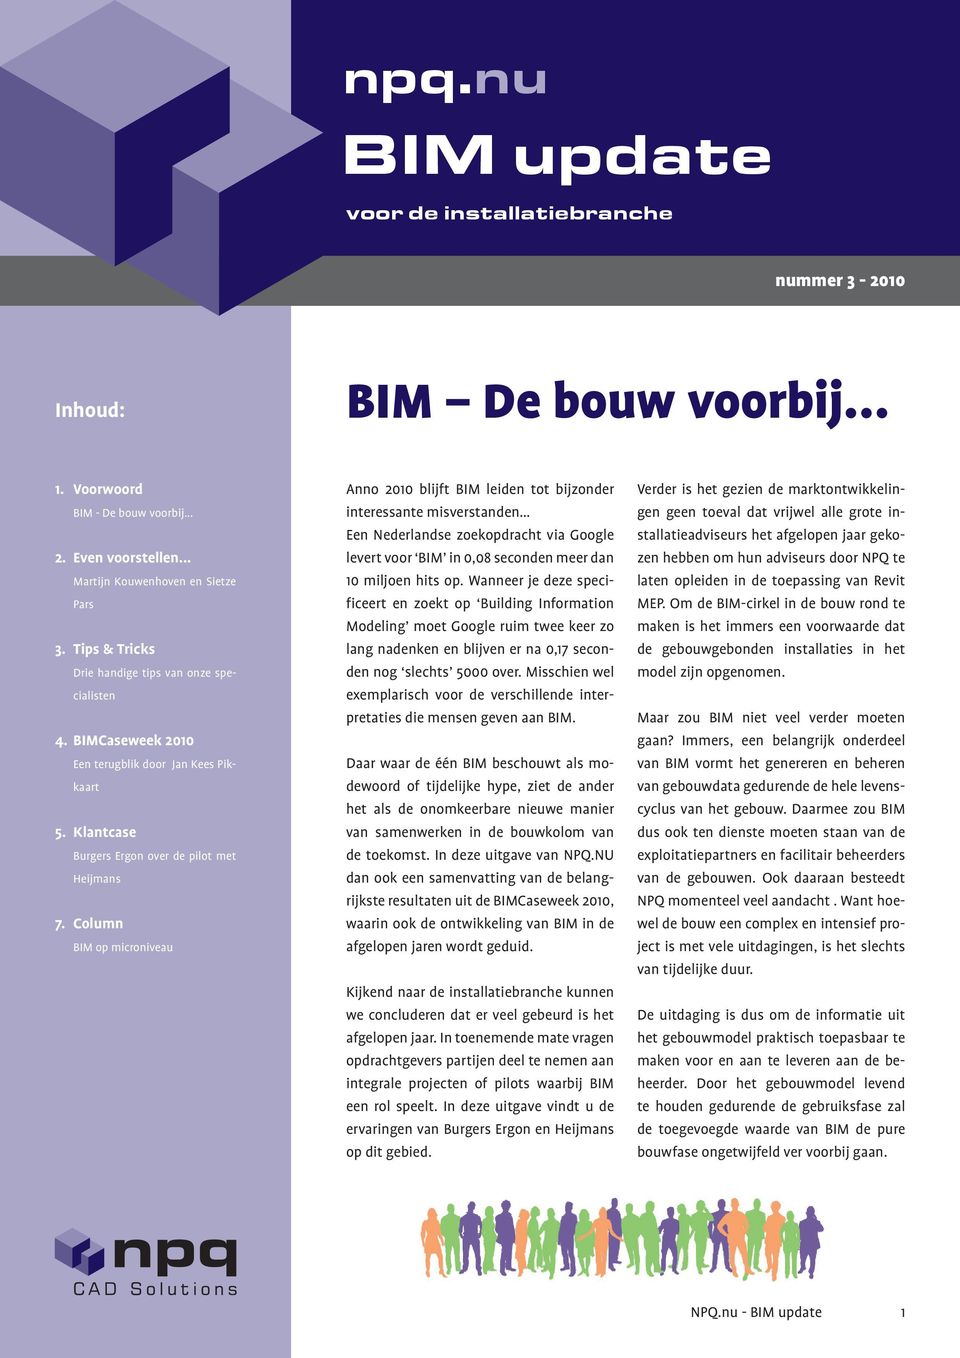 Column BIM op microniveau Anno 2010 blijft BIM leiden tot bijzonder interessante misverstanden Een Nederlandse zoekopdracht via Google levert voor BIM in 0,08 seconden meer dan 10 miljoen hits op.